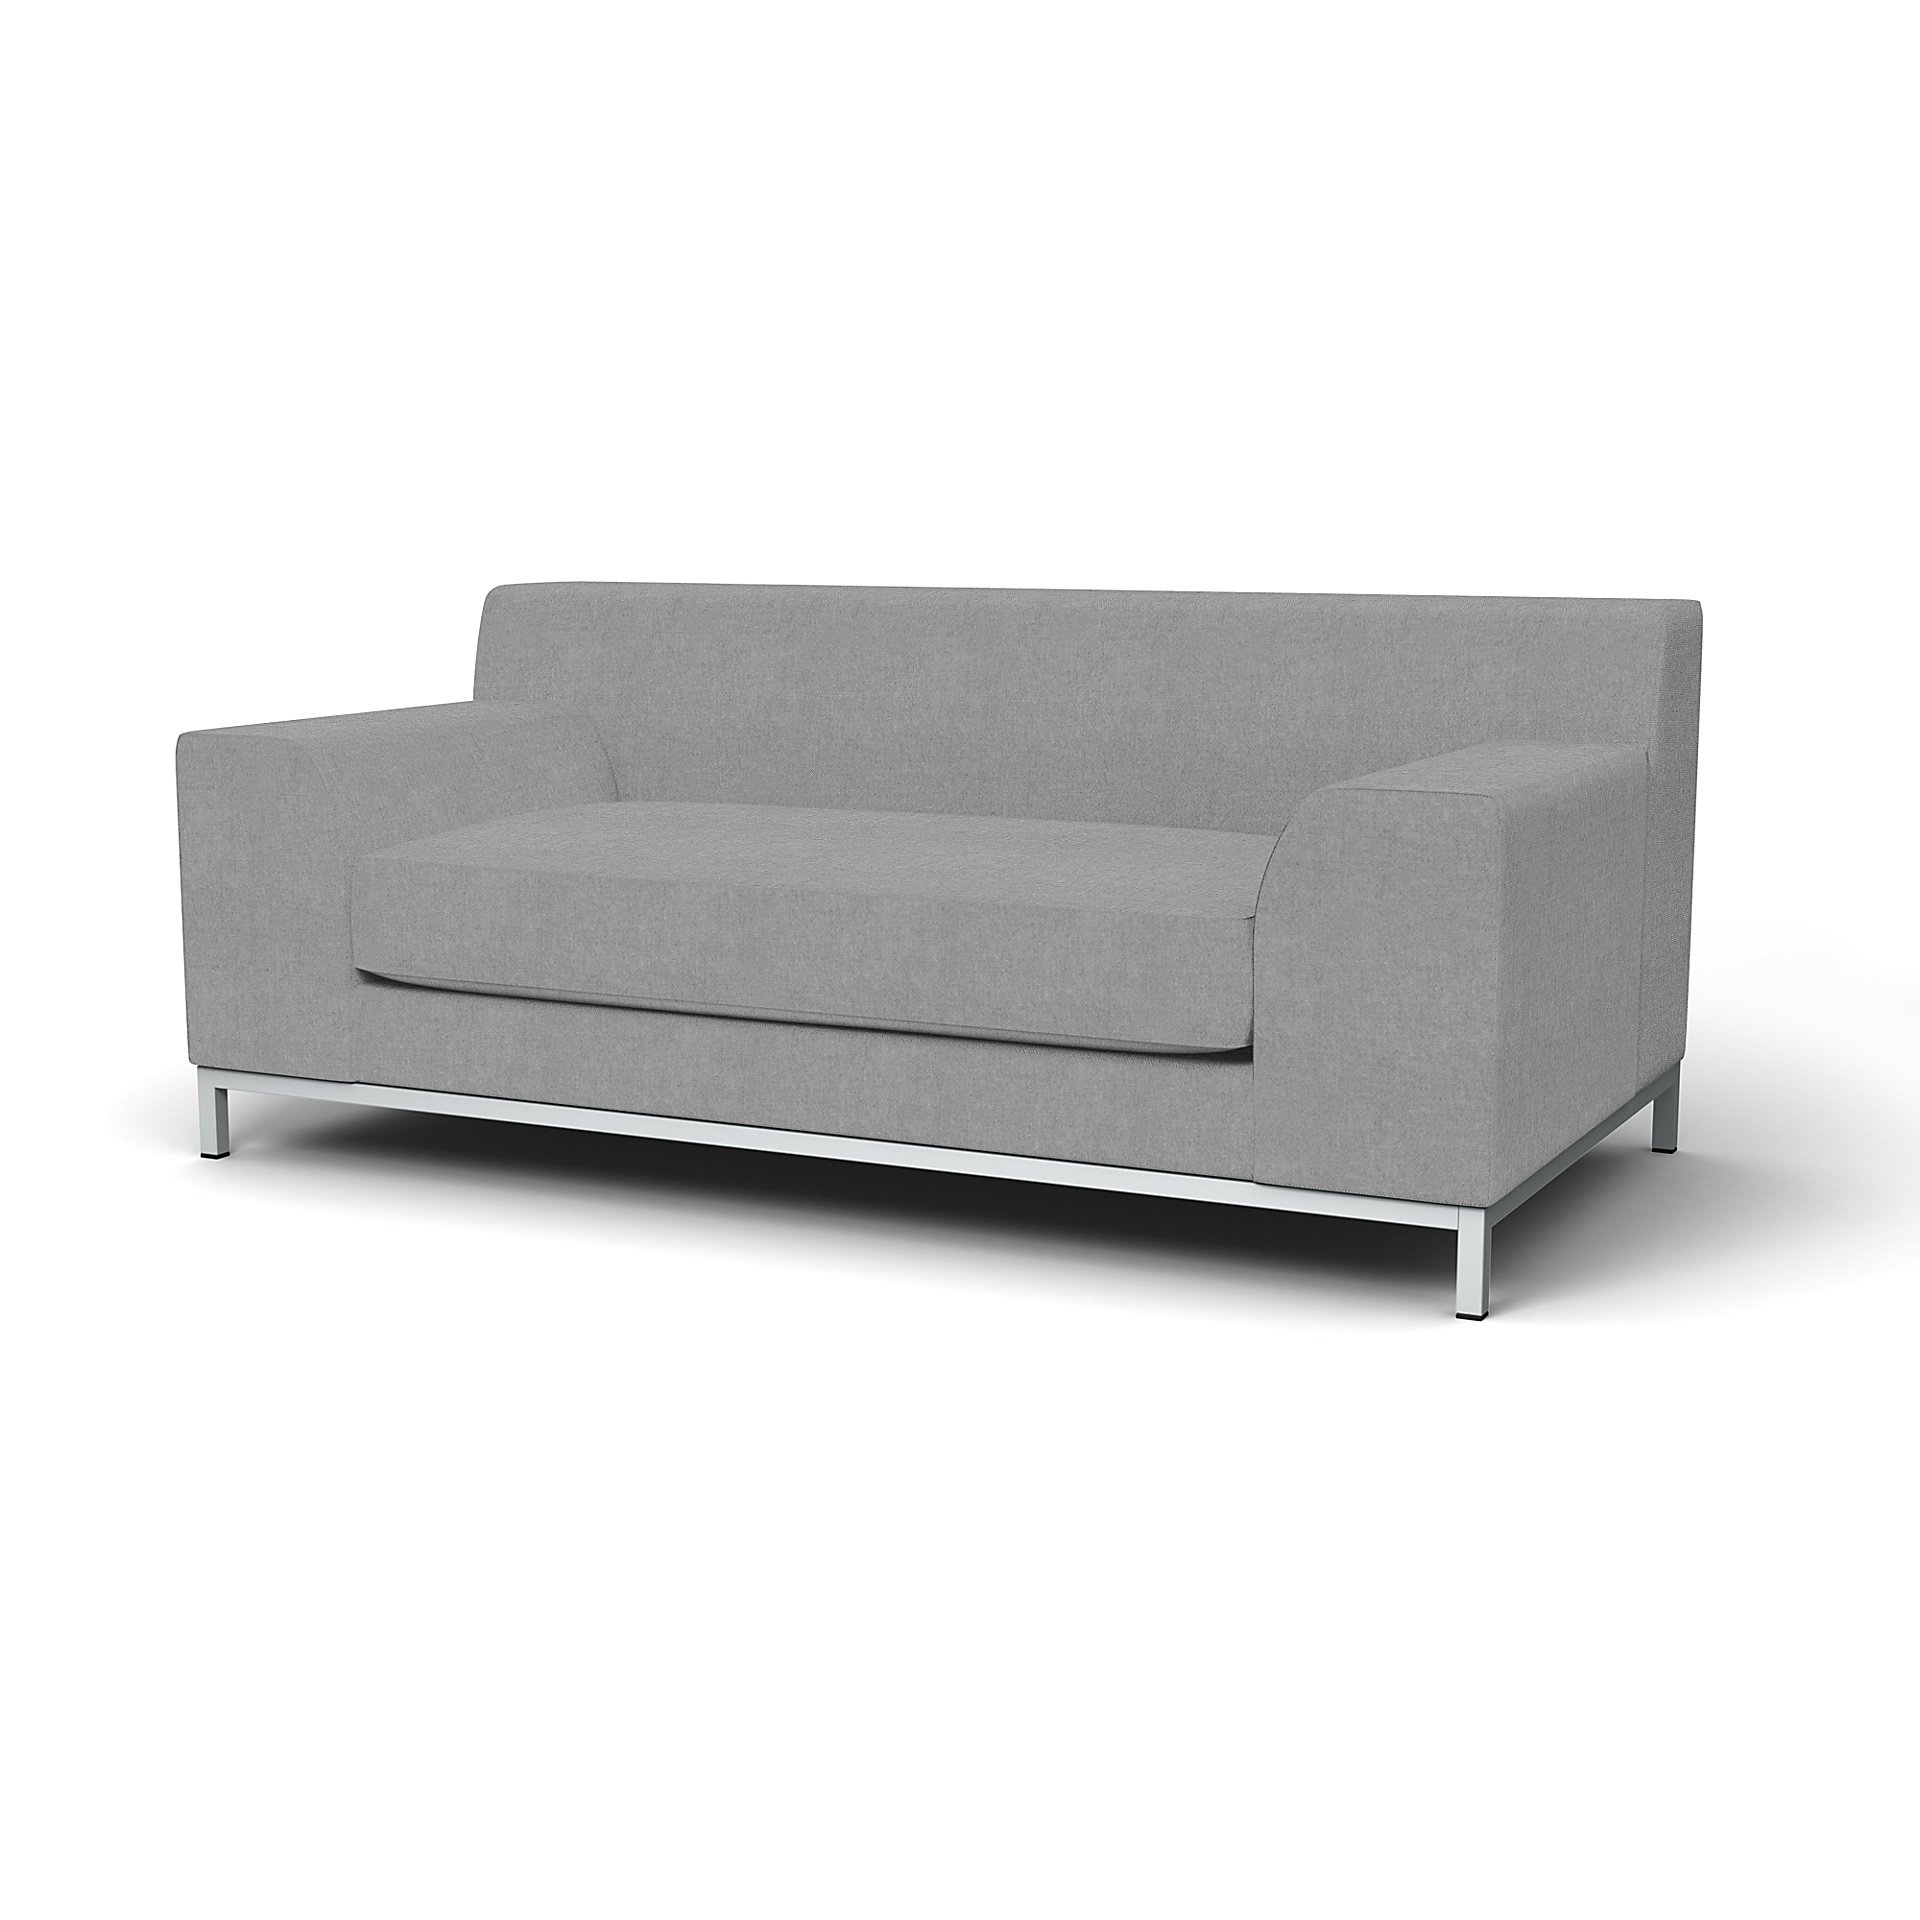 IKEA - Kramfors 2 Seater Sofa Cover, Graphite, Linen - Bemz